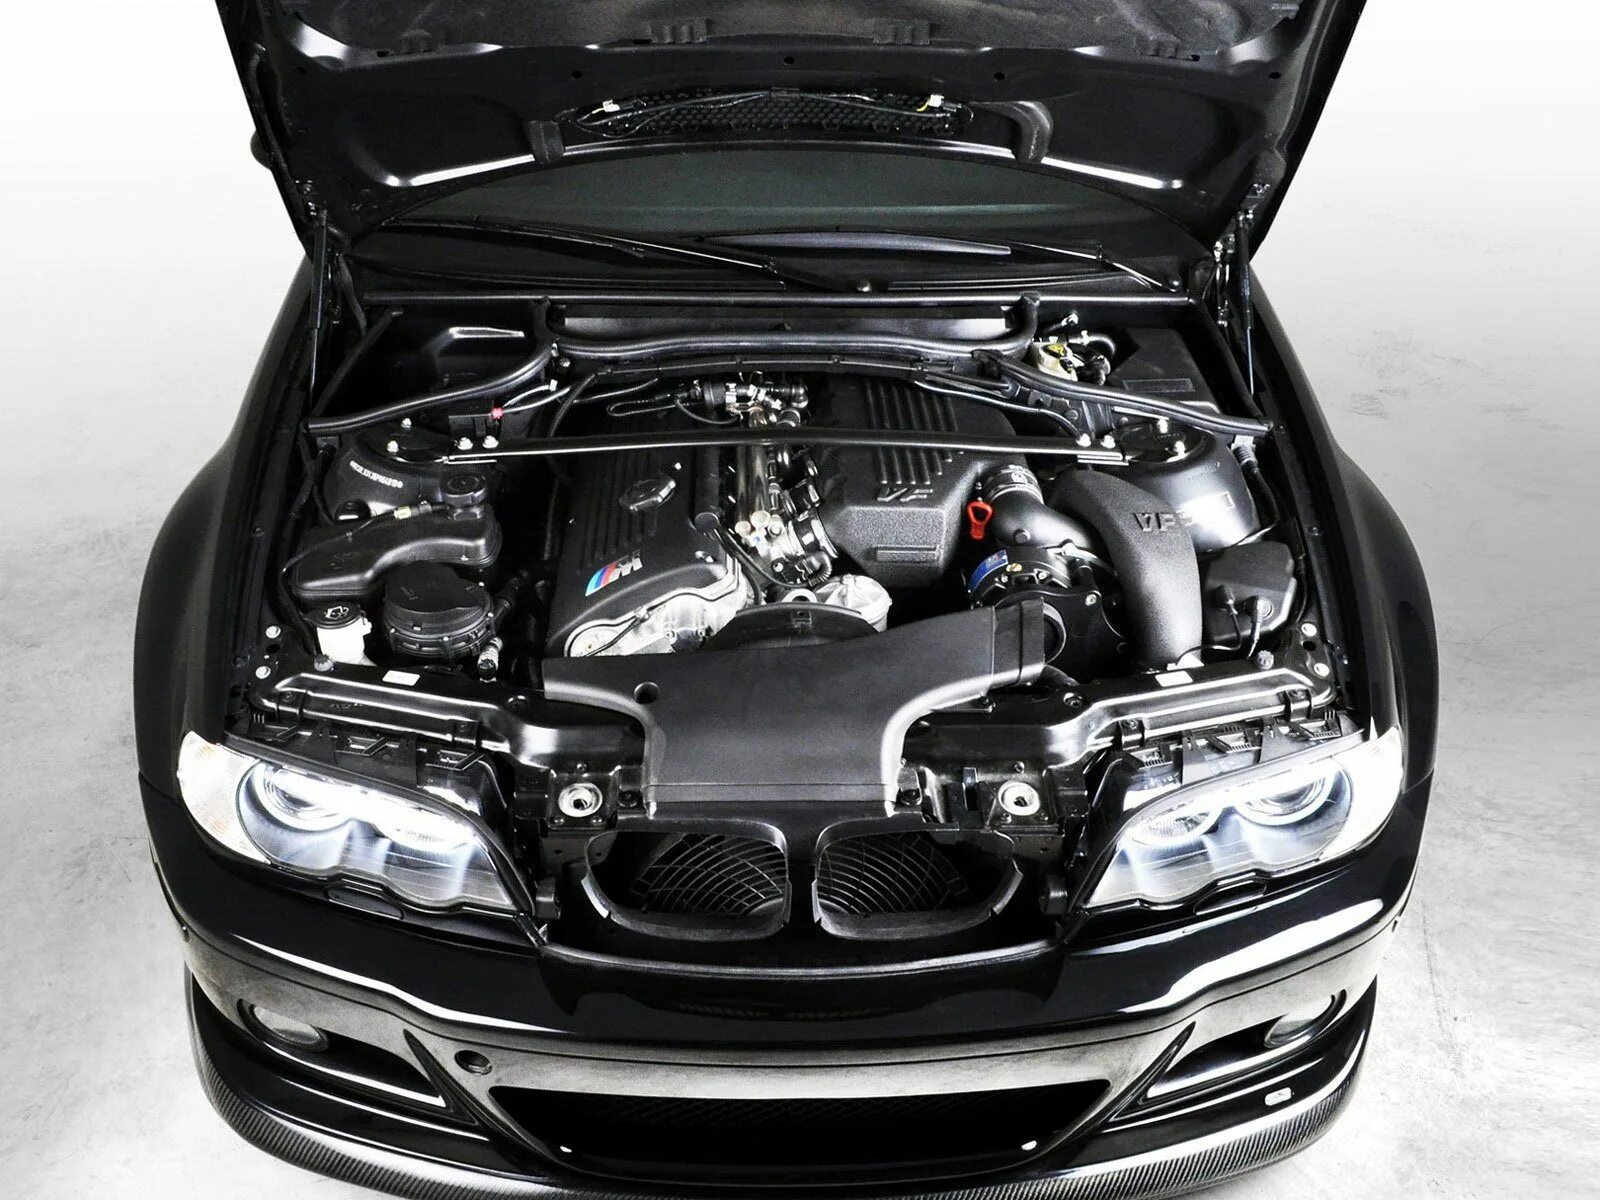 BMW m3 e46 мотор. BMW 3 e46 engine. BMW m3 e46 под капотом. BMW e46 m3 подкапотка. Машина с открытым капотом